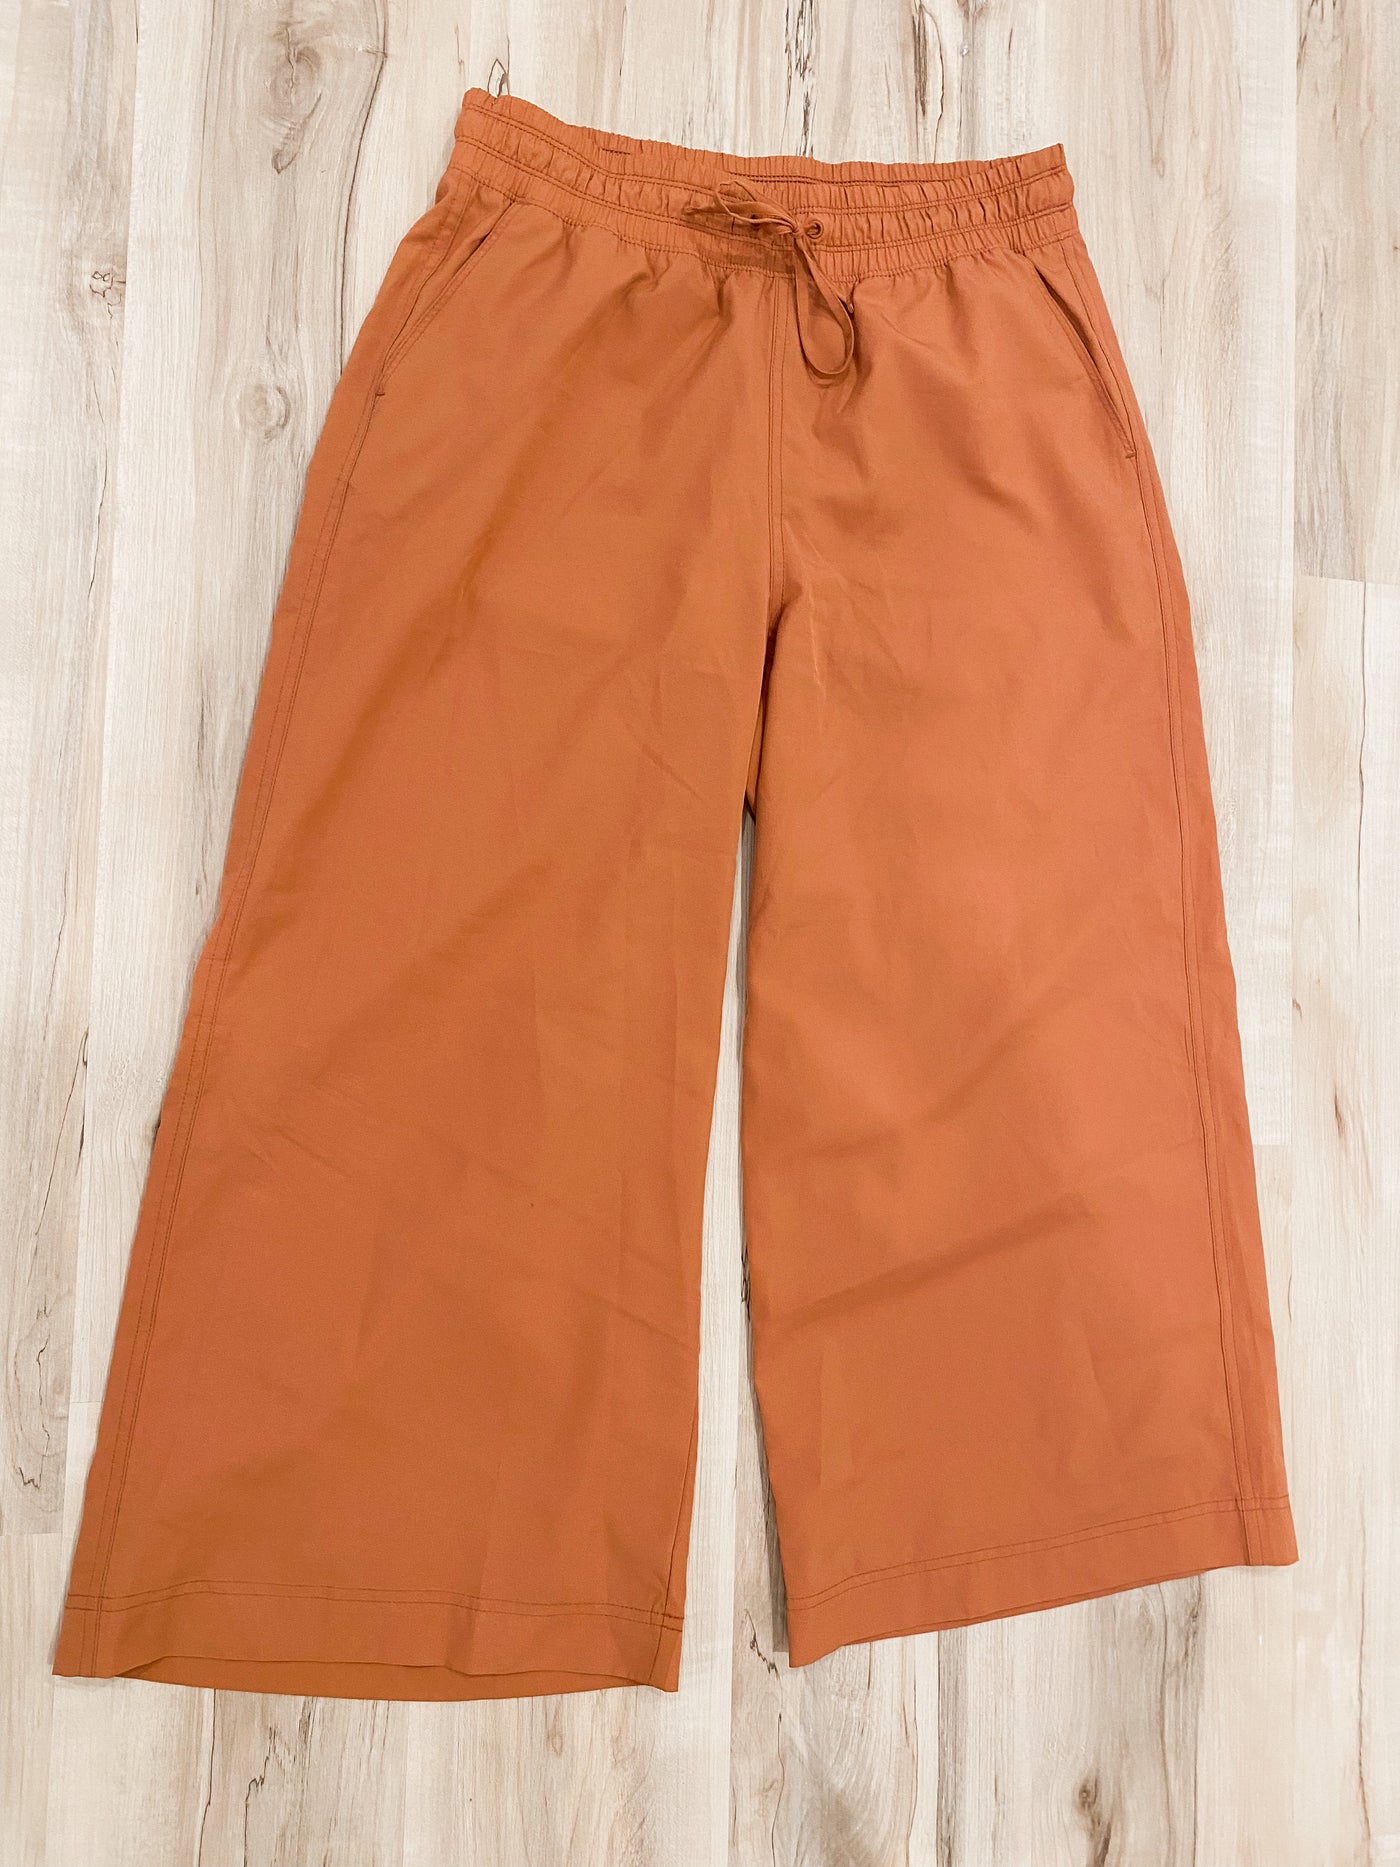 GAP orange athletic style cropped pants